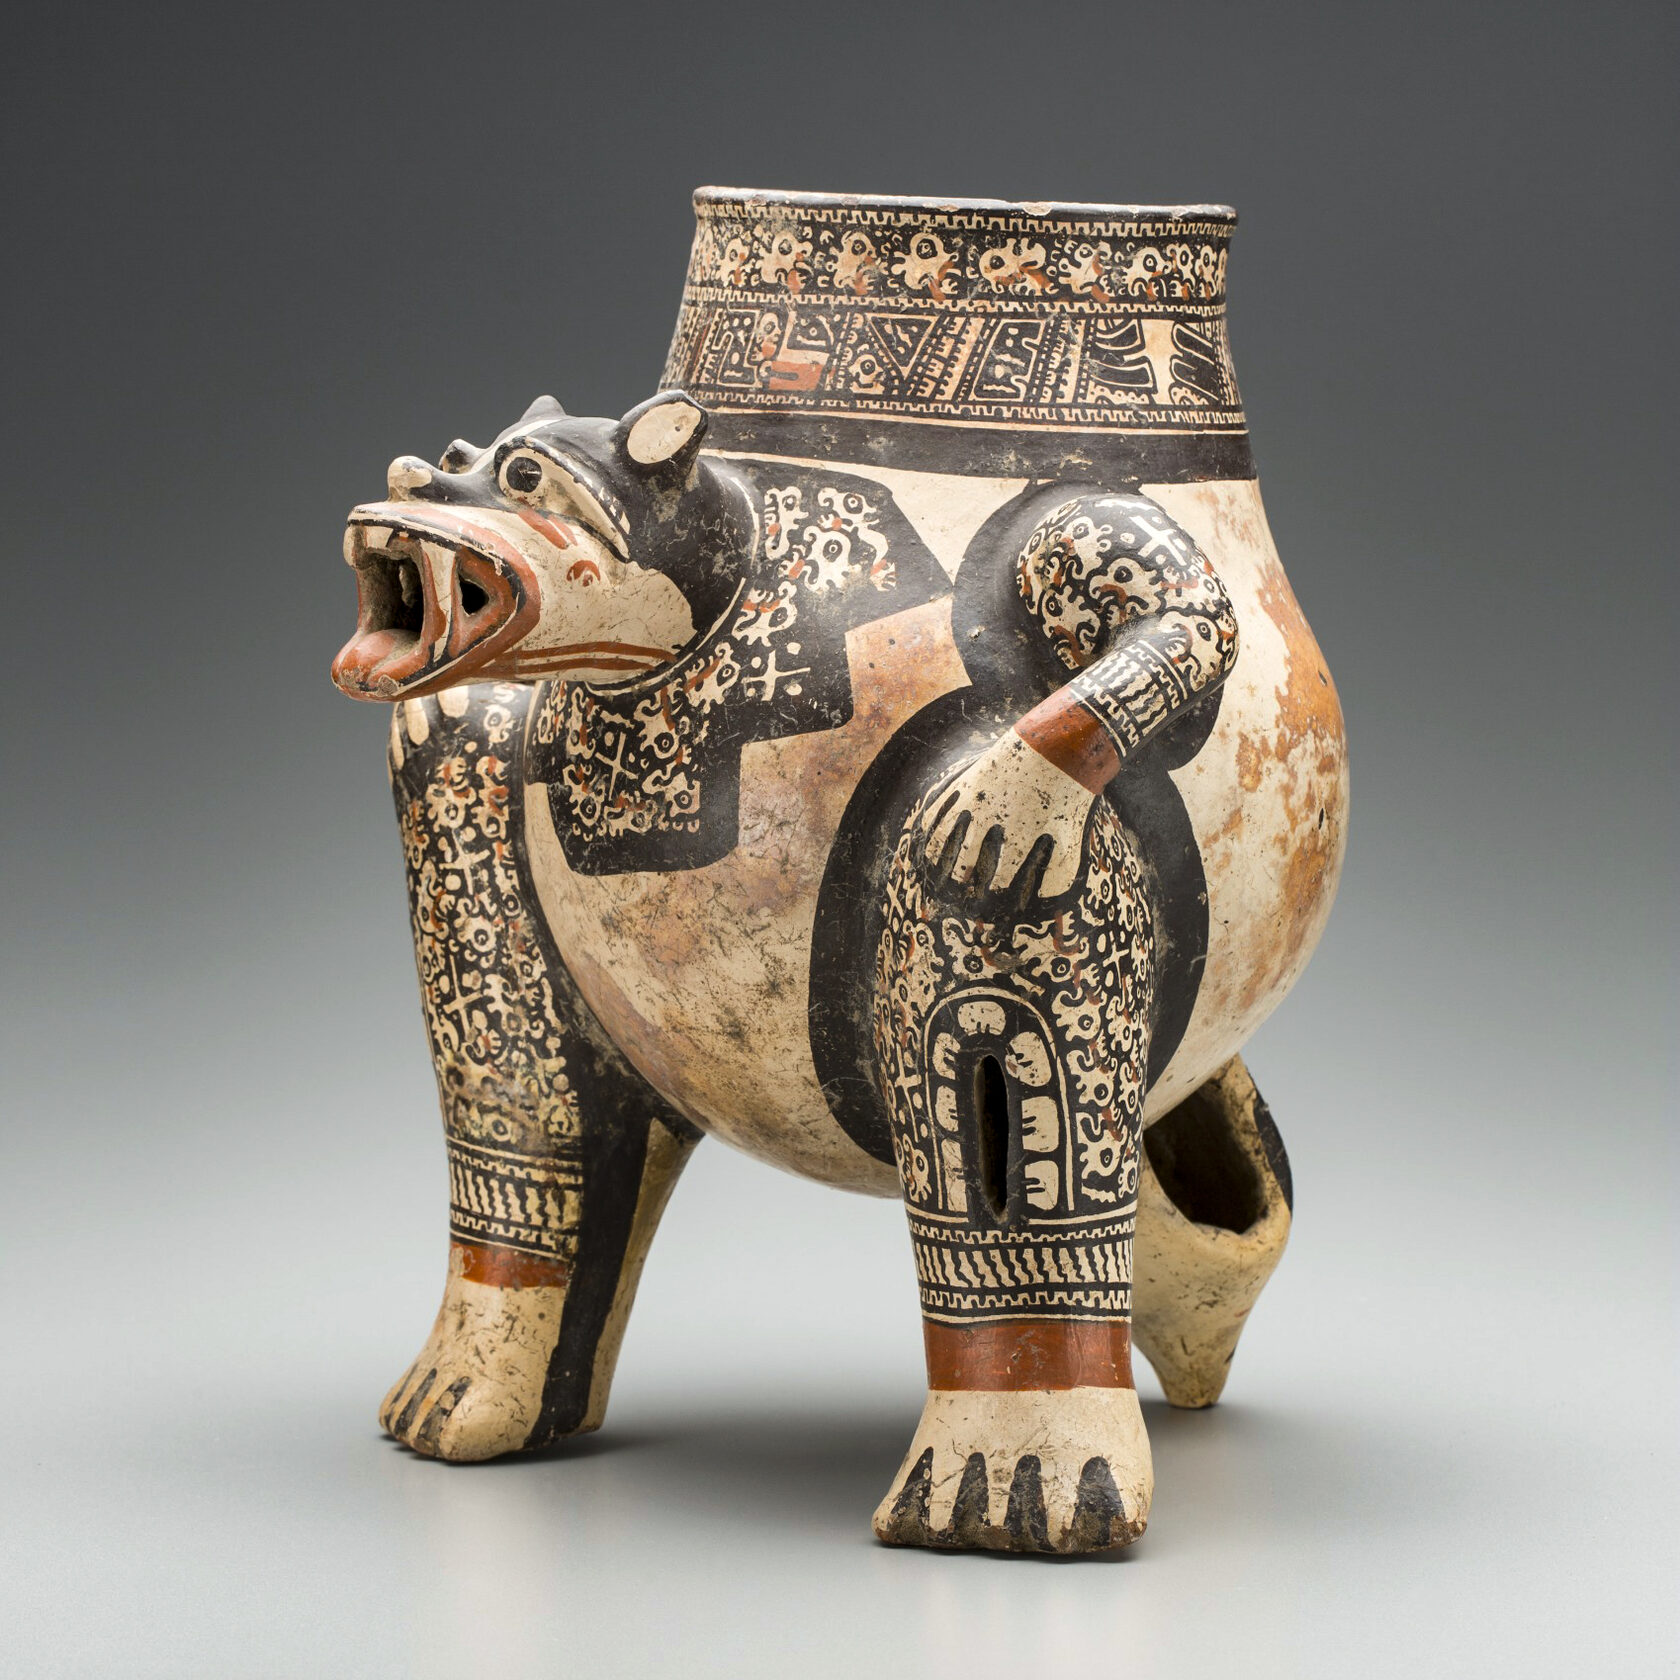 Сосуд в виде ягуара. Коста-Рика, 1000-1500 гг. н.э. Коллекция Detroit Institute of Arts.